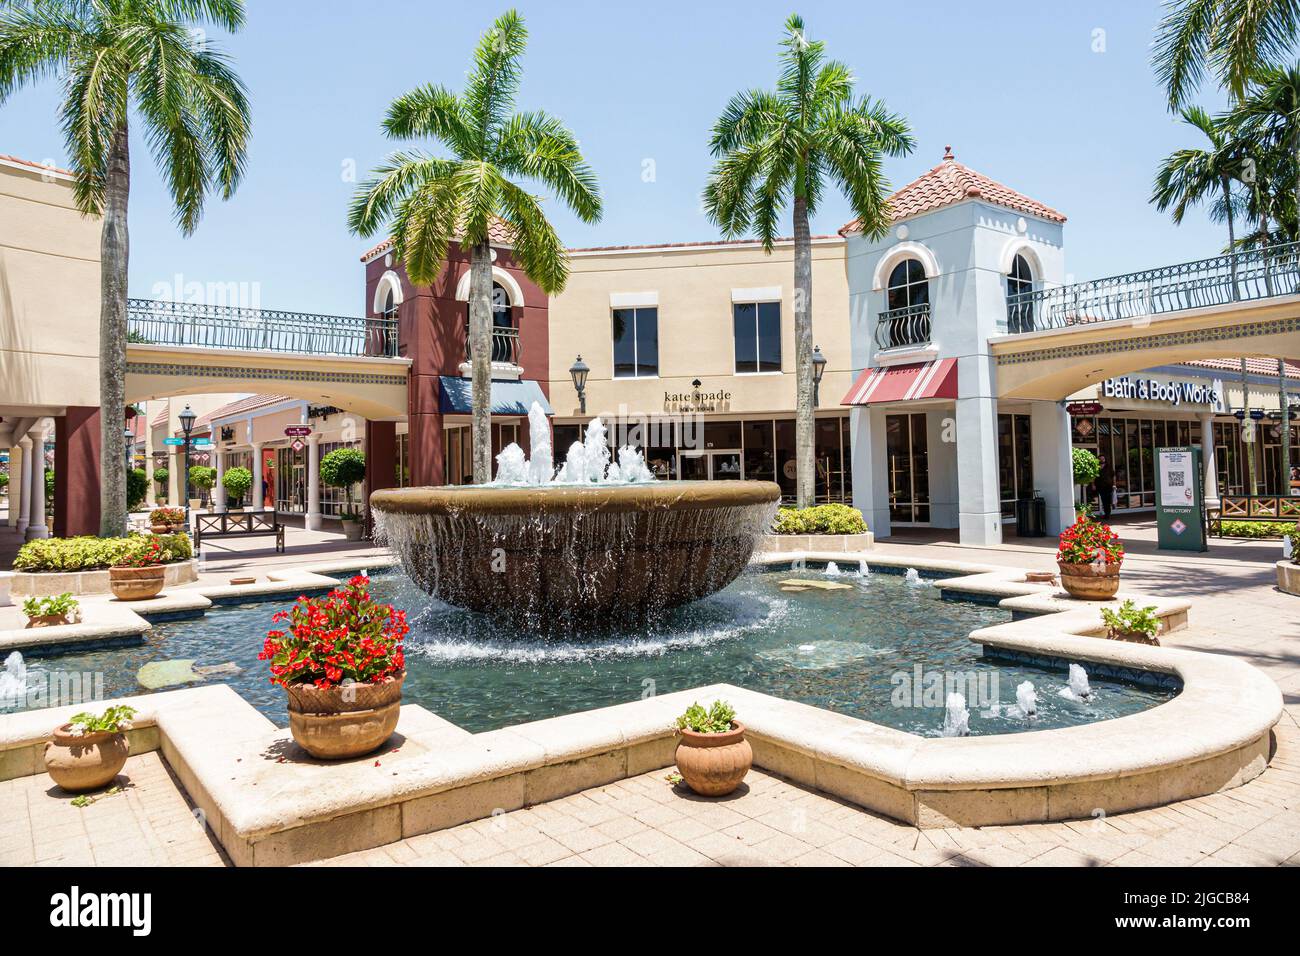 Estero Florida,Miromar Outlet factory outlets designer name brand shopping mall fountain Stock Photo